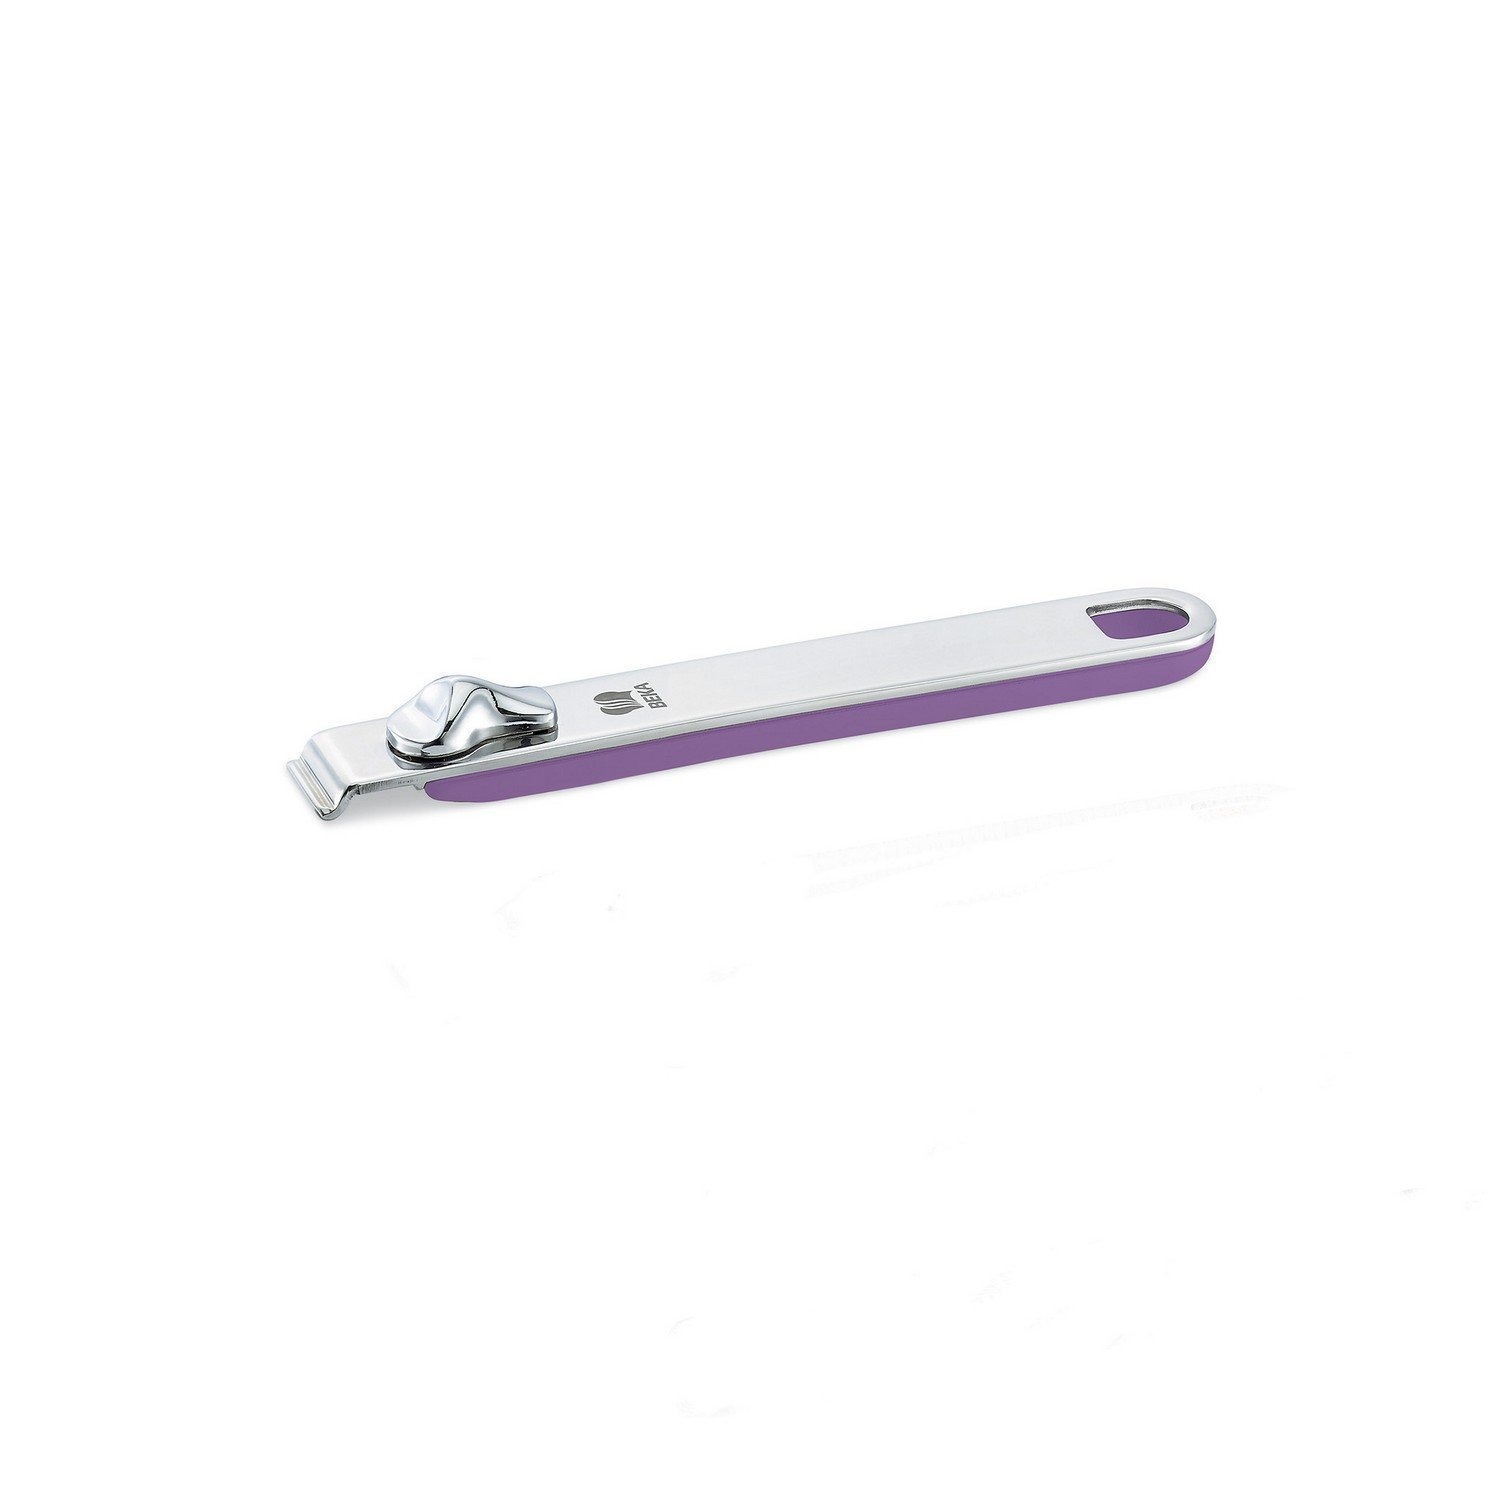 Ручка съемная длинная Beka select фиолетовая 18,5 см